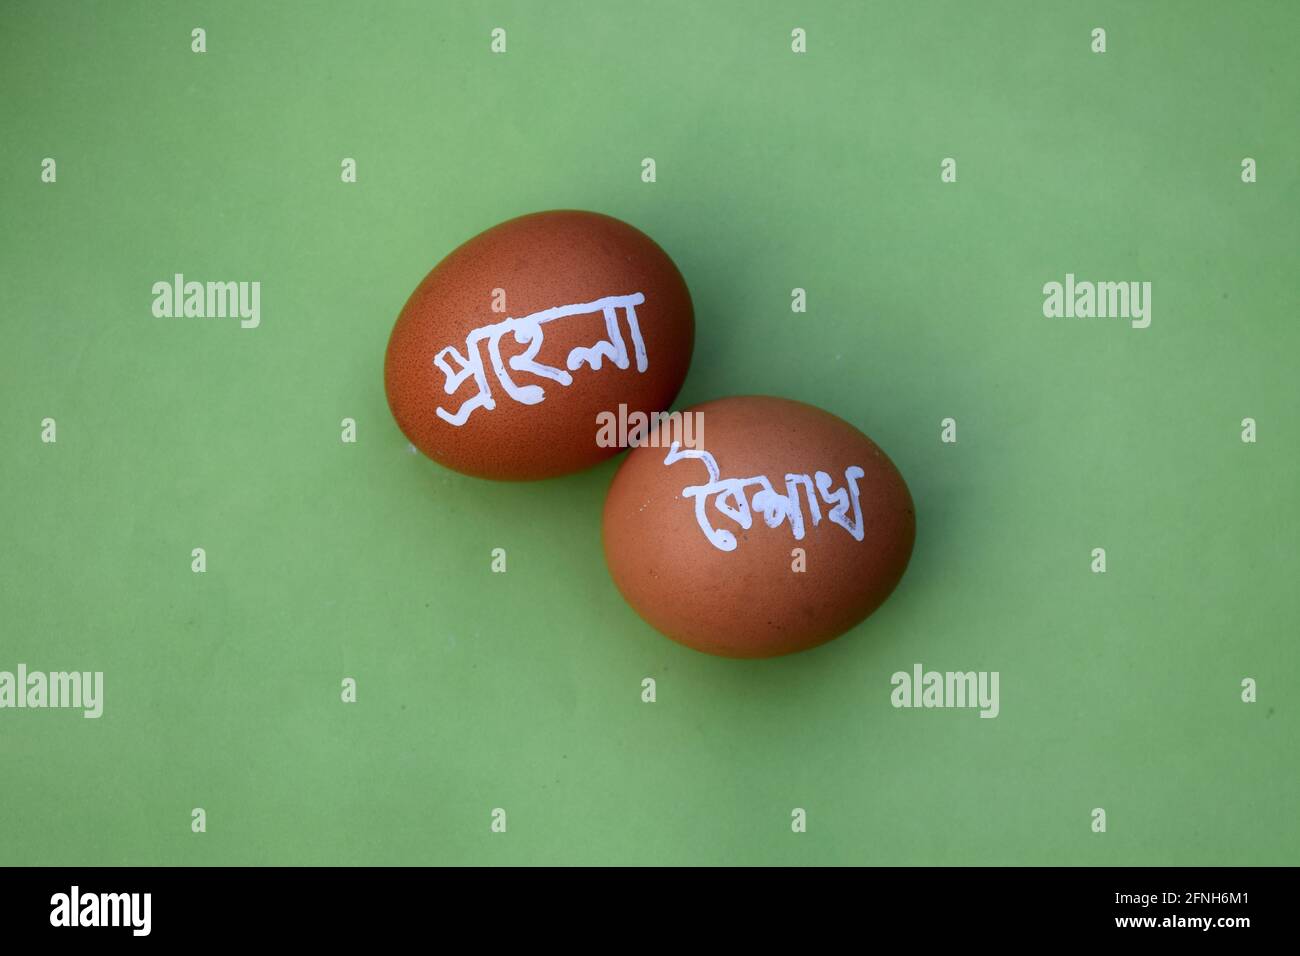 Pohela boishakh on egg. Pohela boishakh means Bengali New Year. Bengali translated character. Stock Photo